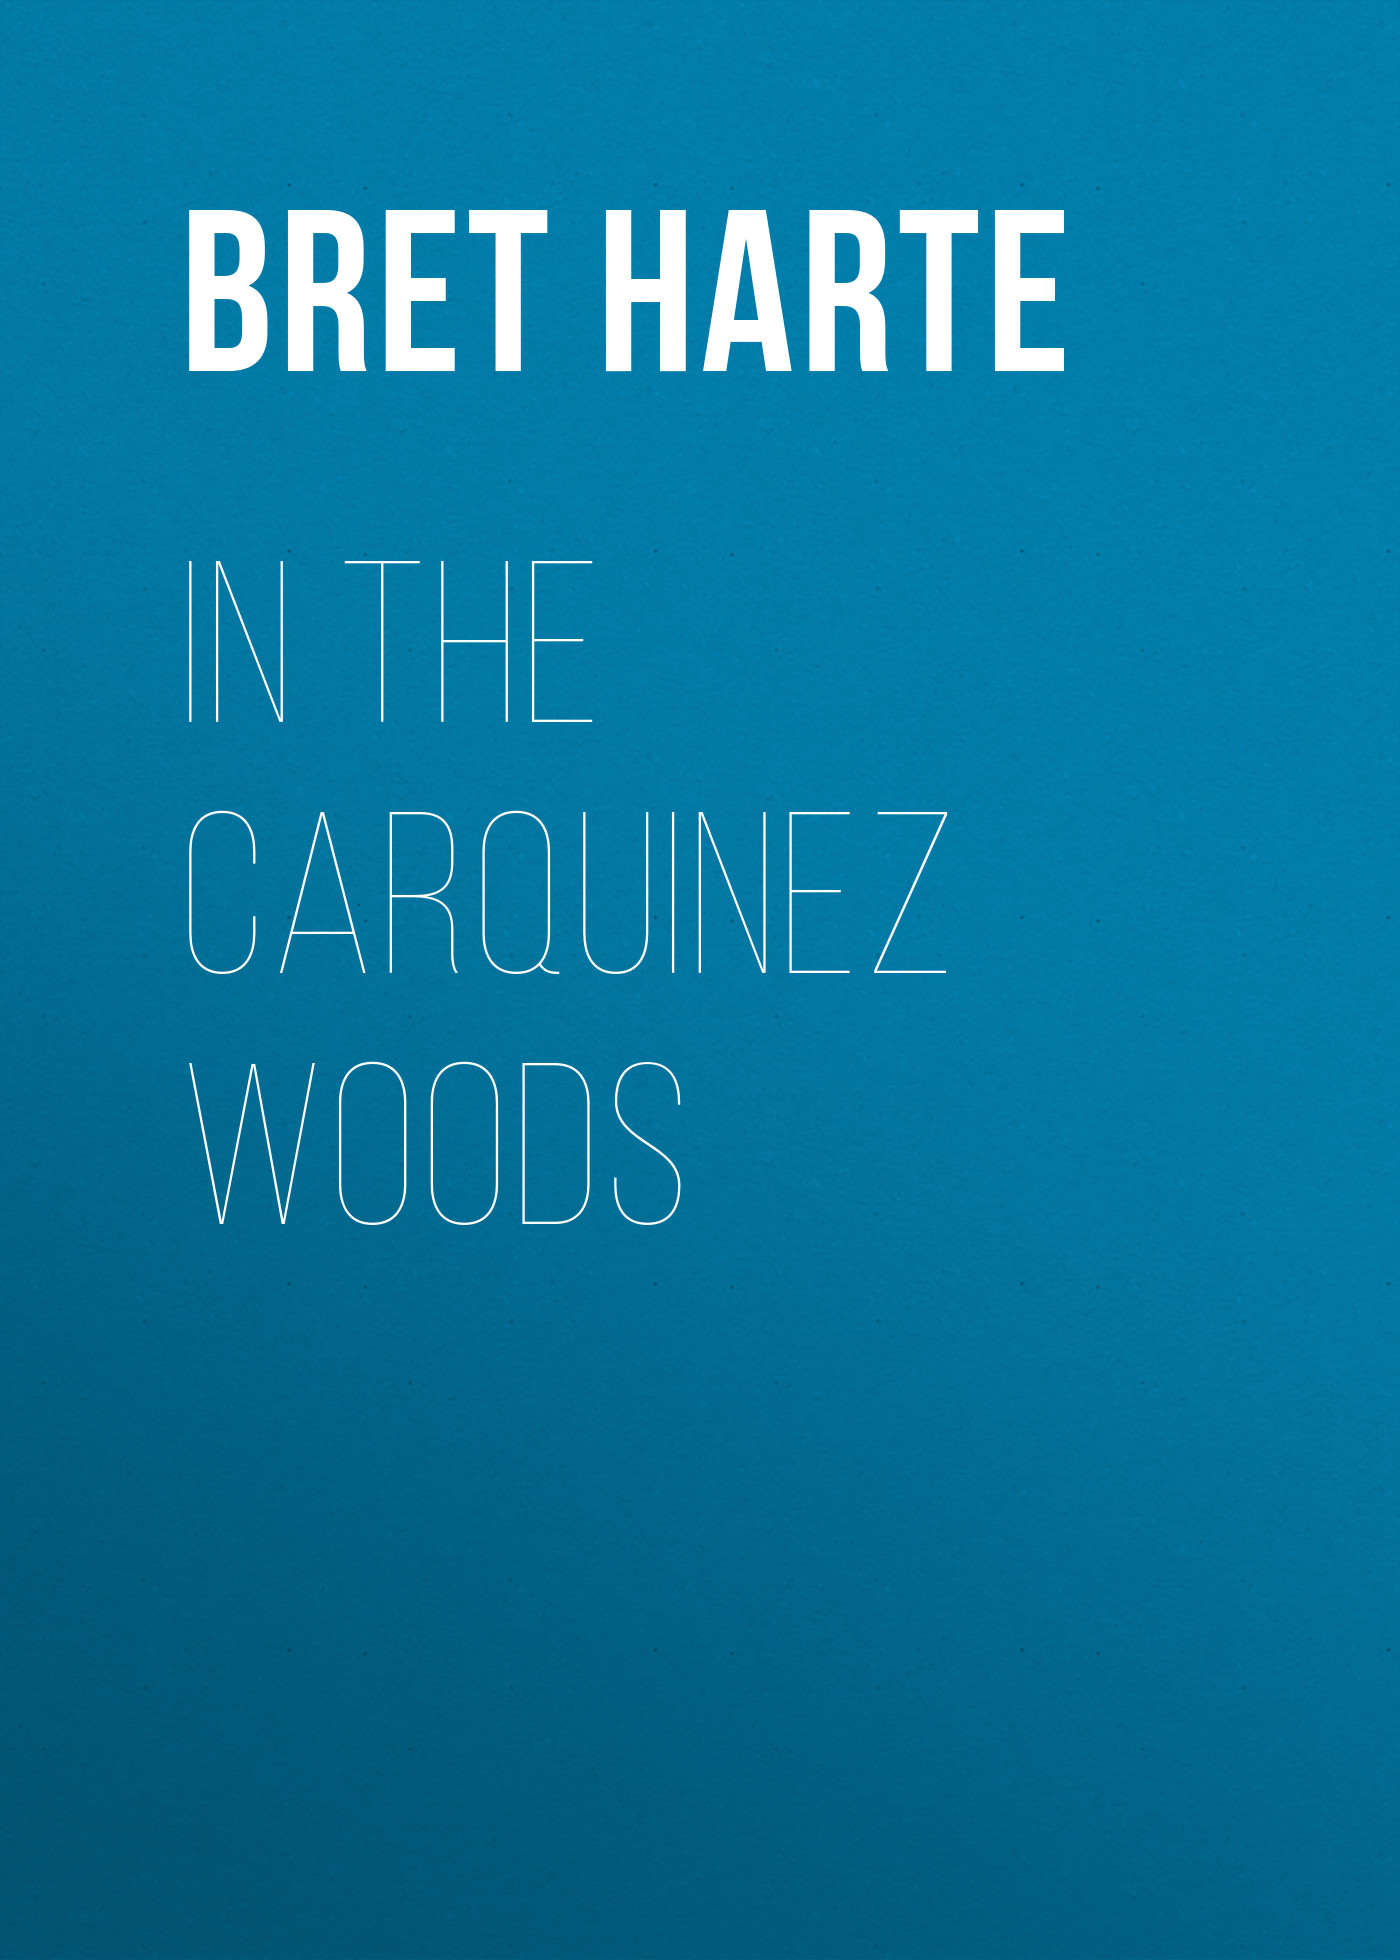 Книга In the Carquinez Woods из серии , созданная Bret Harte, может относится к жанру Зарубежная фантастика, Литература 19 века, Зарубежная старинная литература, Зарубежная классика. Стоимость электронной книги In the Carquinez Woods с идентификатором 36323012 составляет 0 руб.